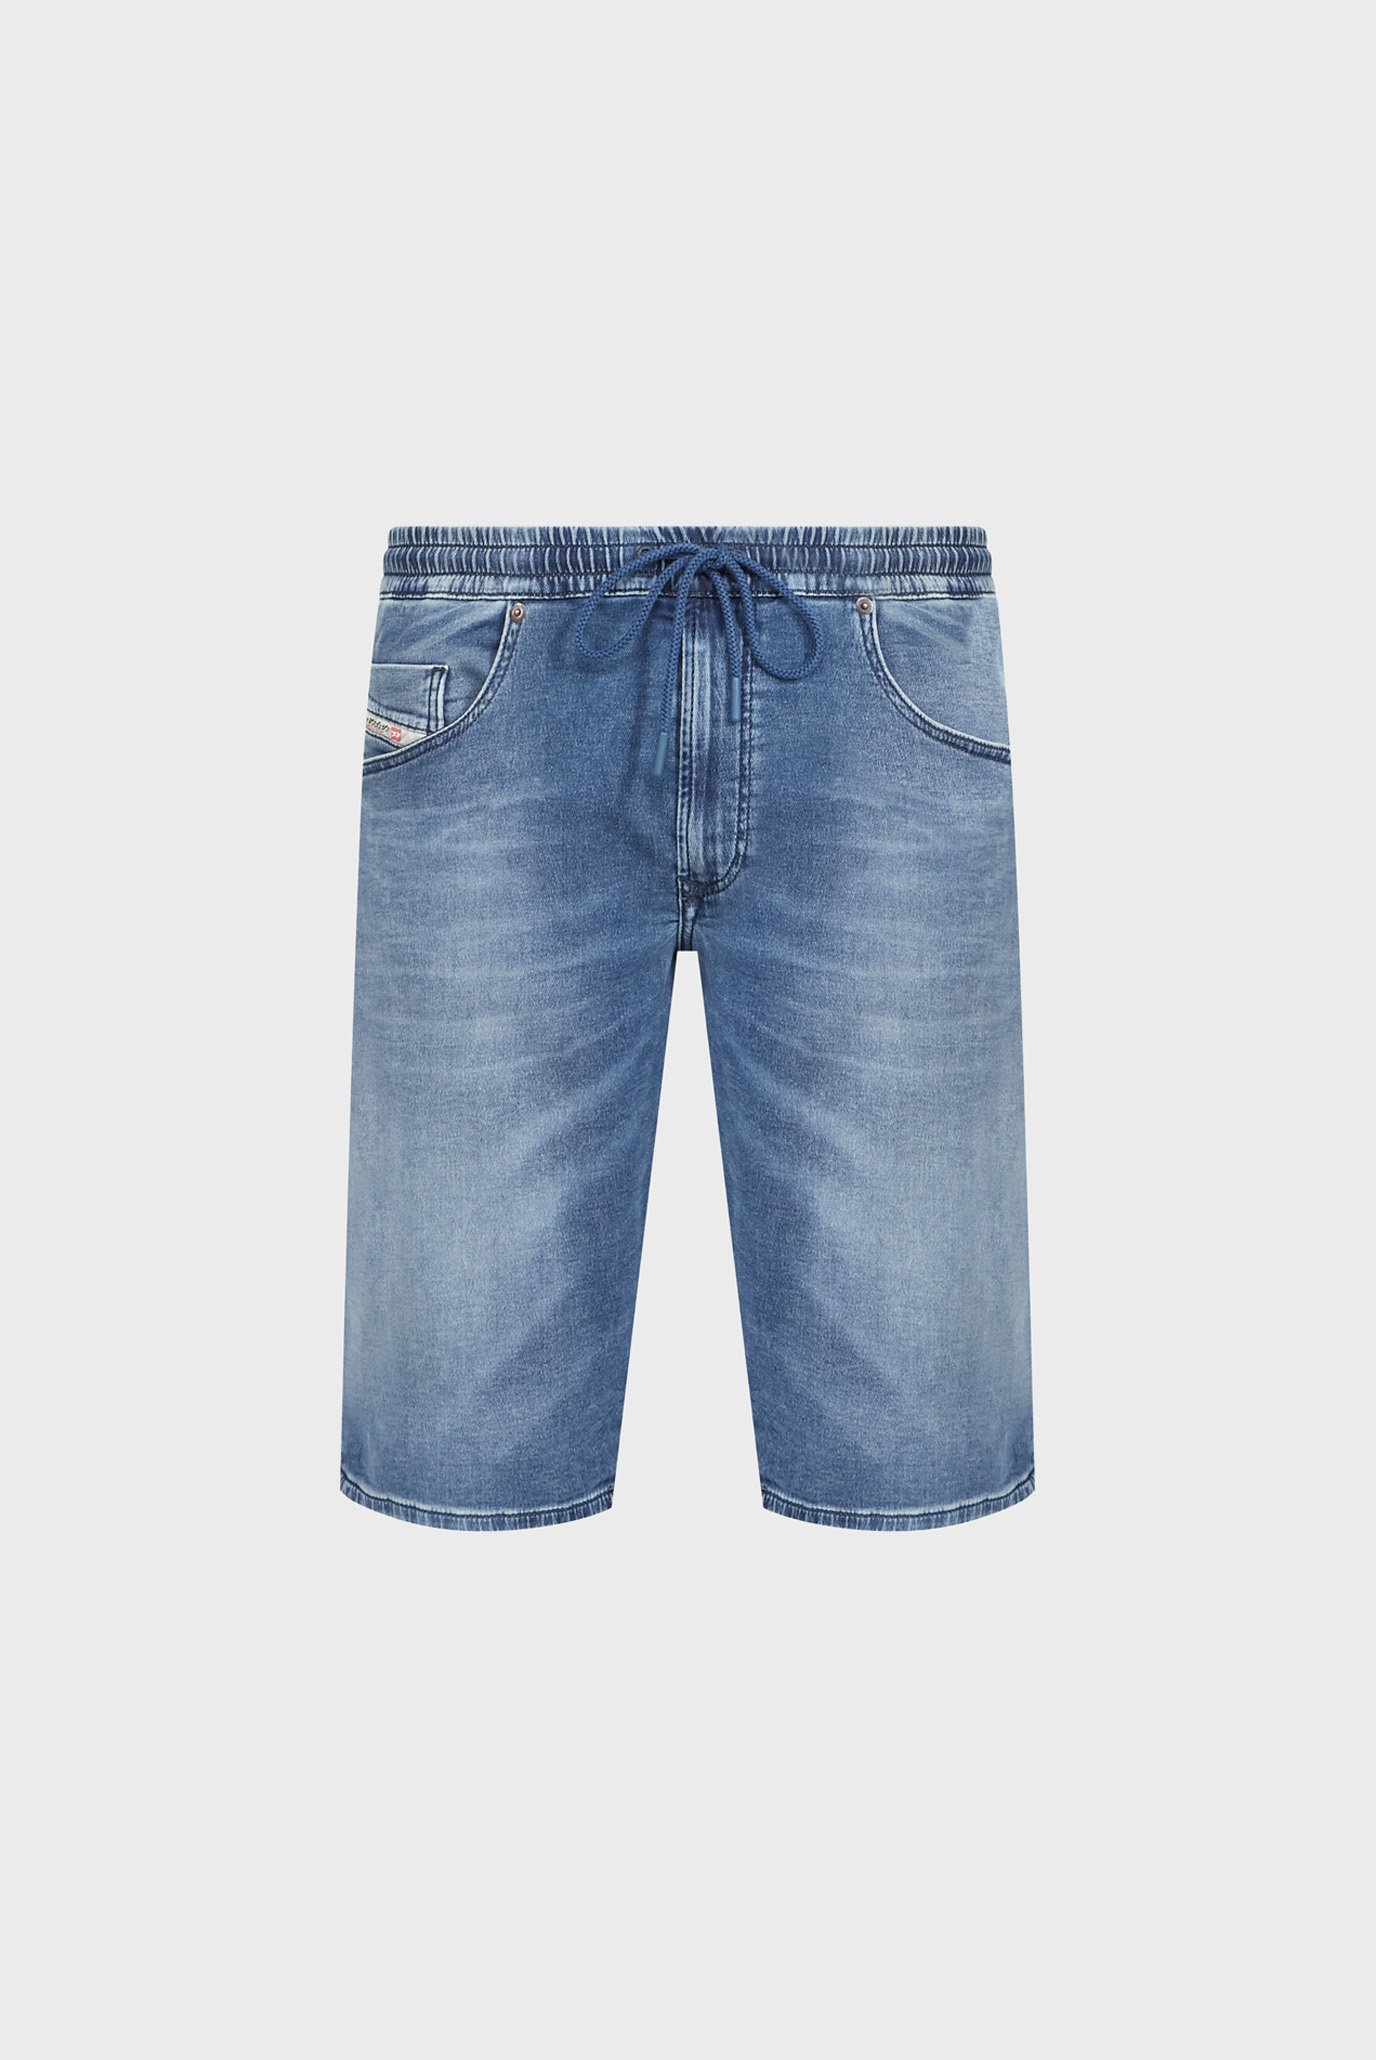 Чоловічі сині джинсові шорти 2033 D-KROOLEY-SHORT JOGG CALZONCINI 1